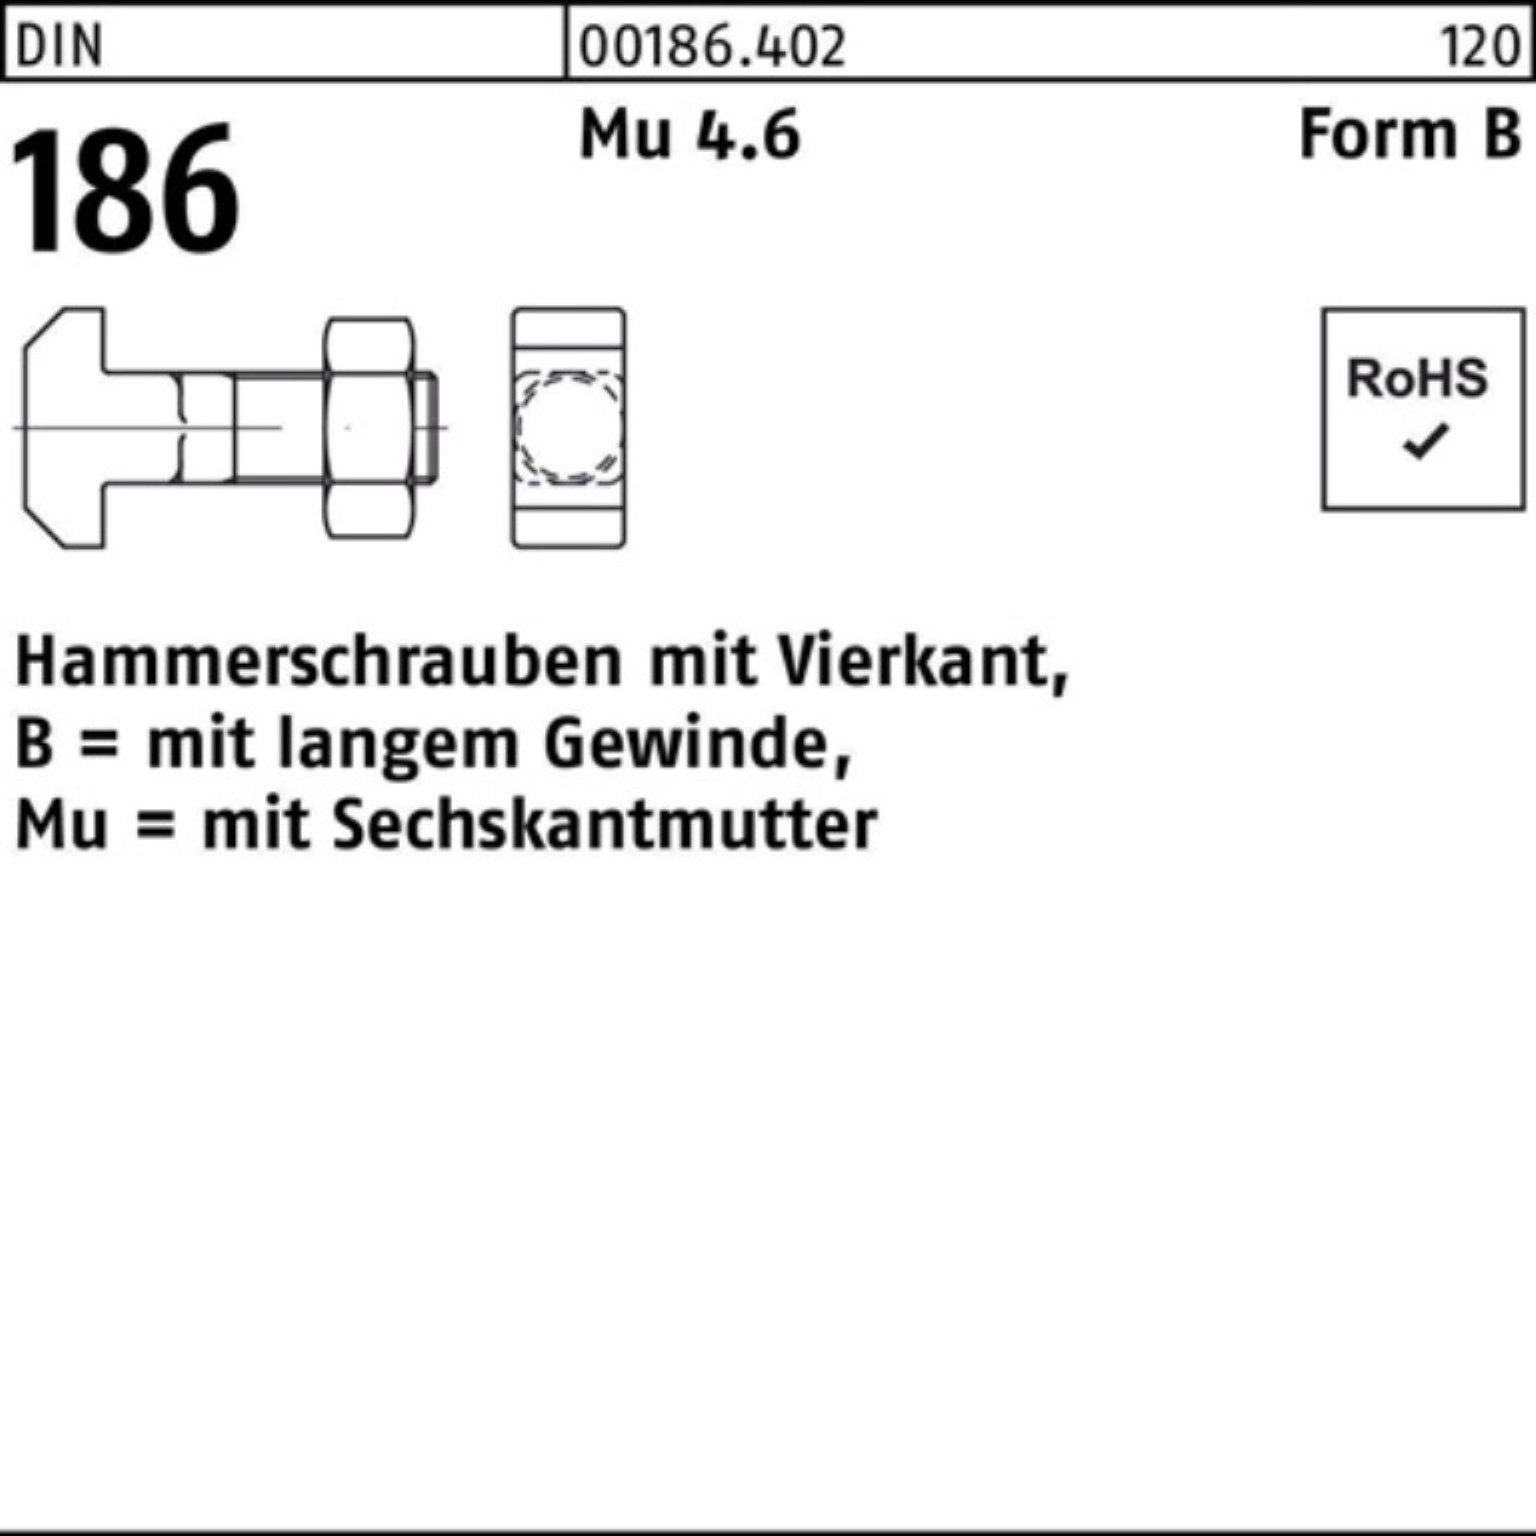 Reyher Schraube 100er Pack Hammerschraube DIN 186 FormB Vierkant 6-ktmutter BM 20x 90